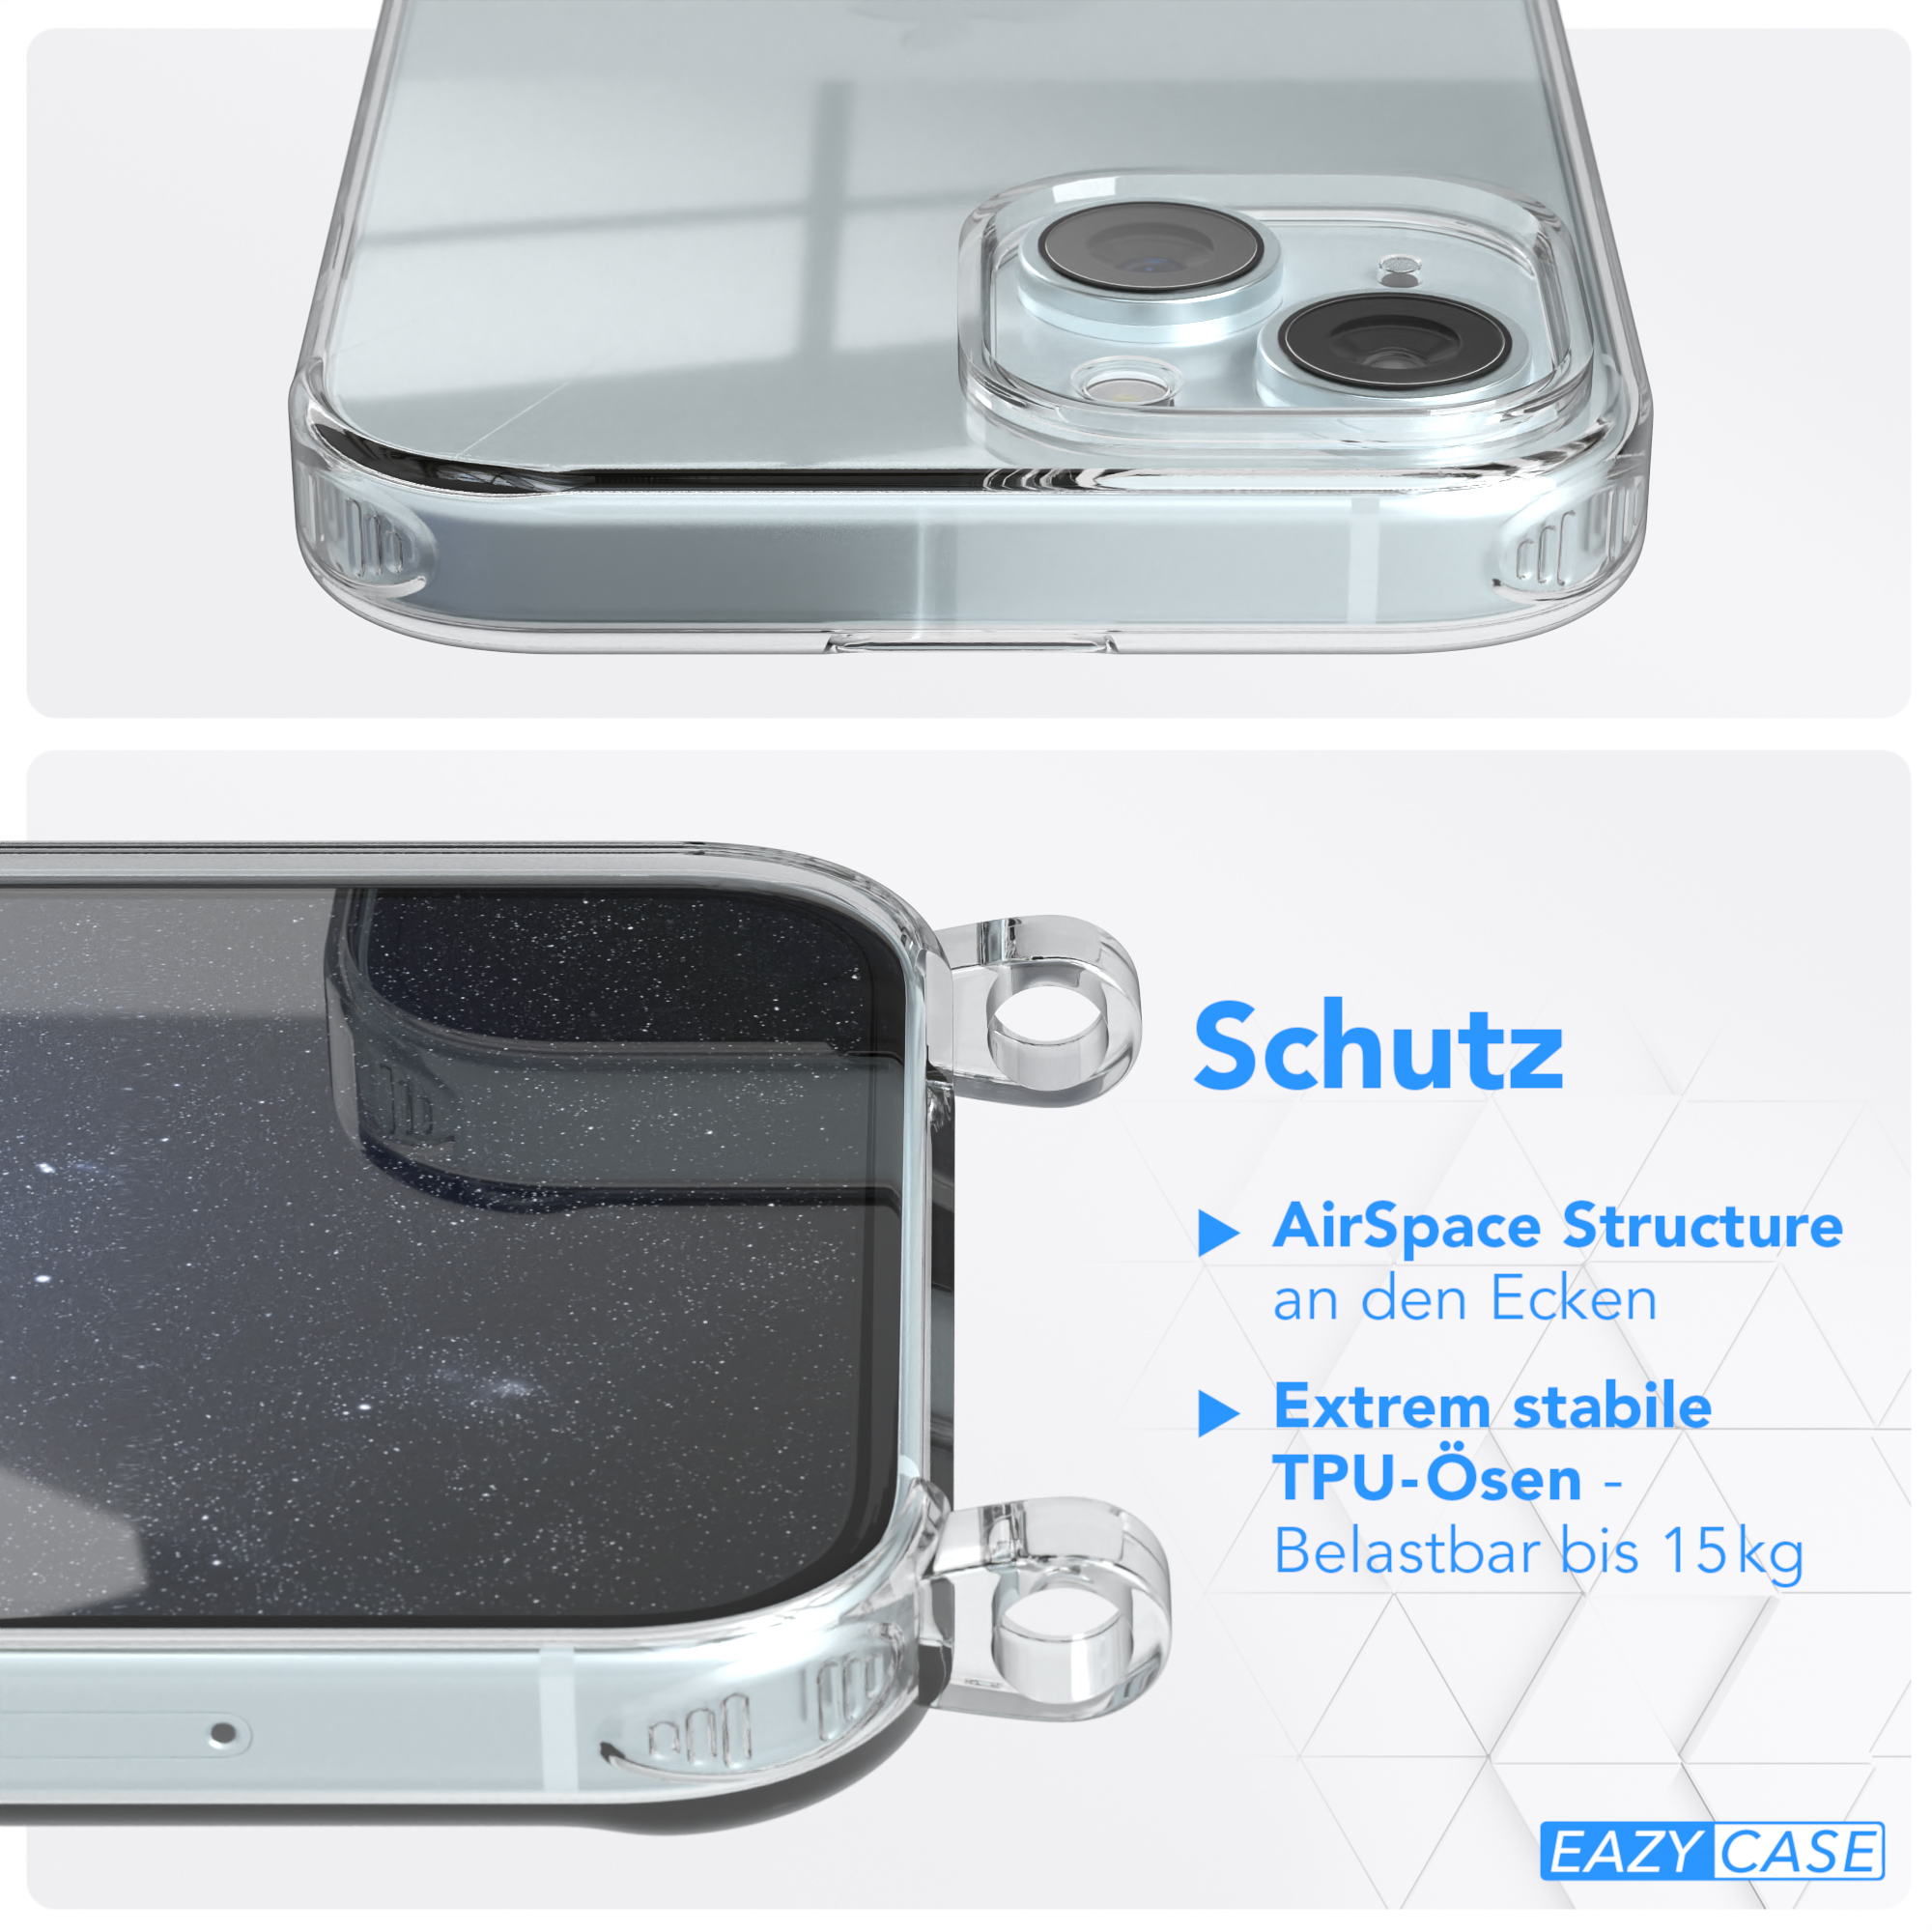 / Kordel Apple, EAZY breiter Blau Transparente iPhone mit Handyhülle Umhängetasche, 15, Dunkel + CASE Karabiner, Gold